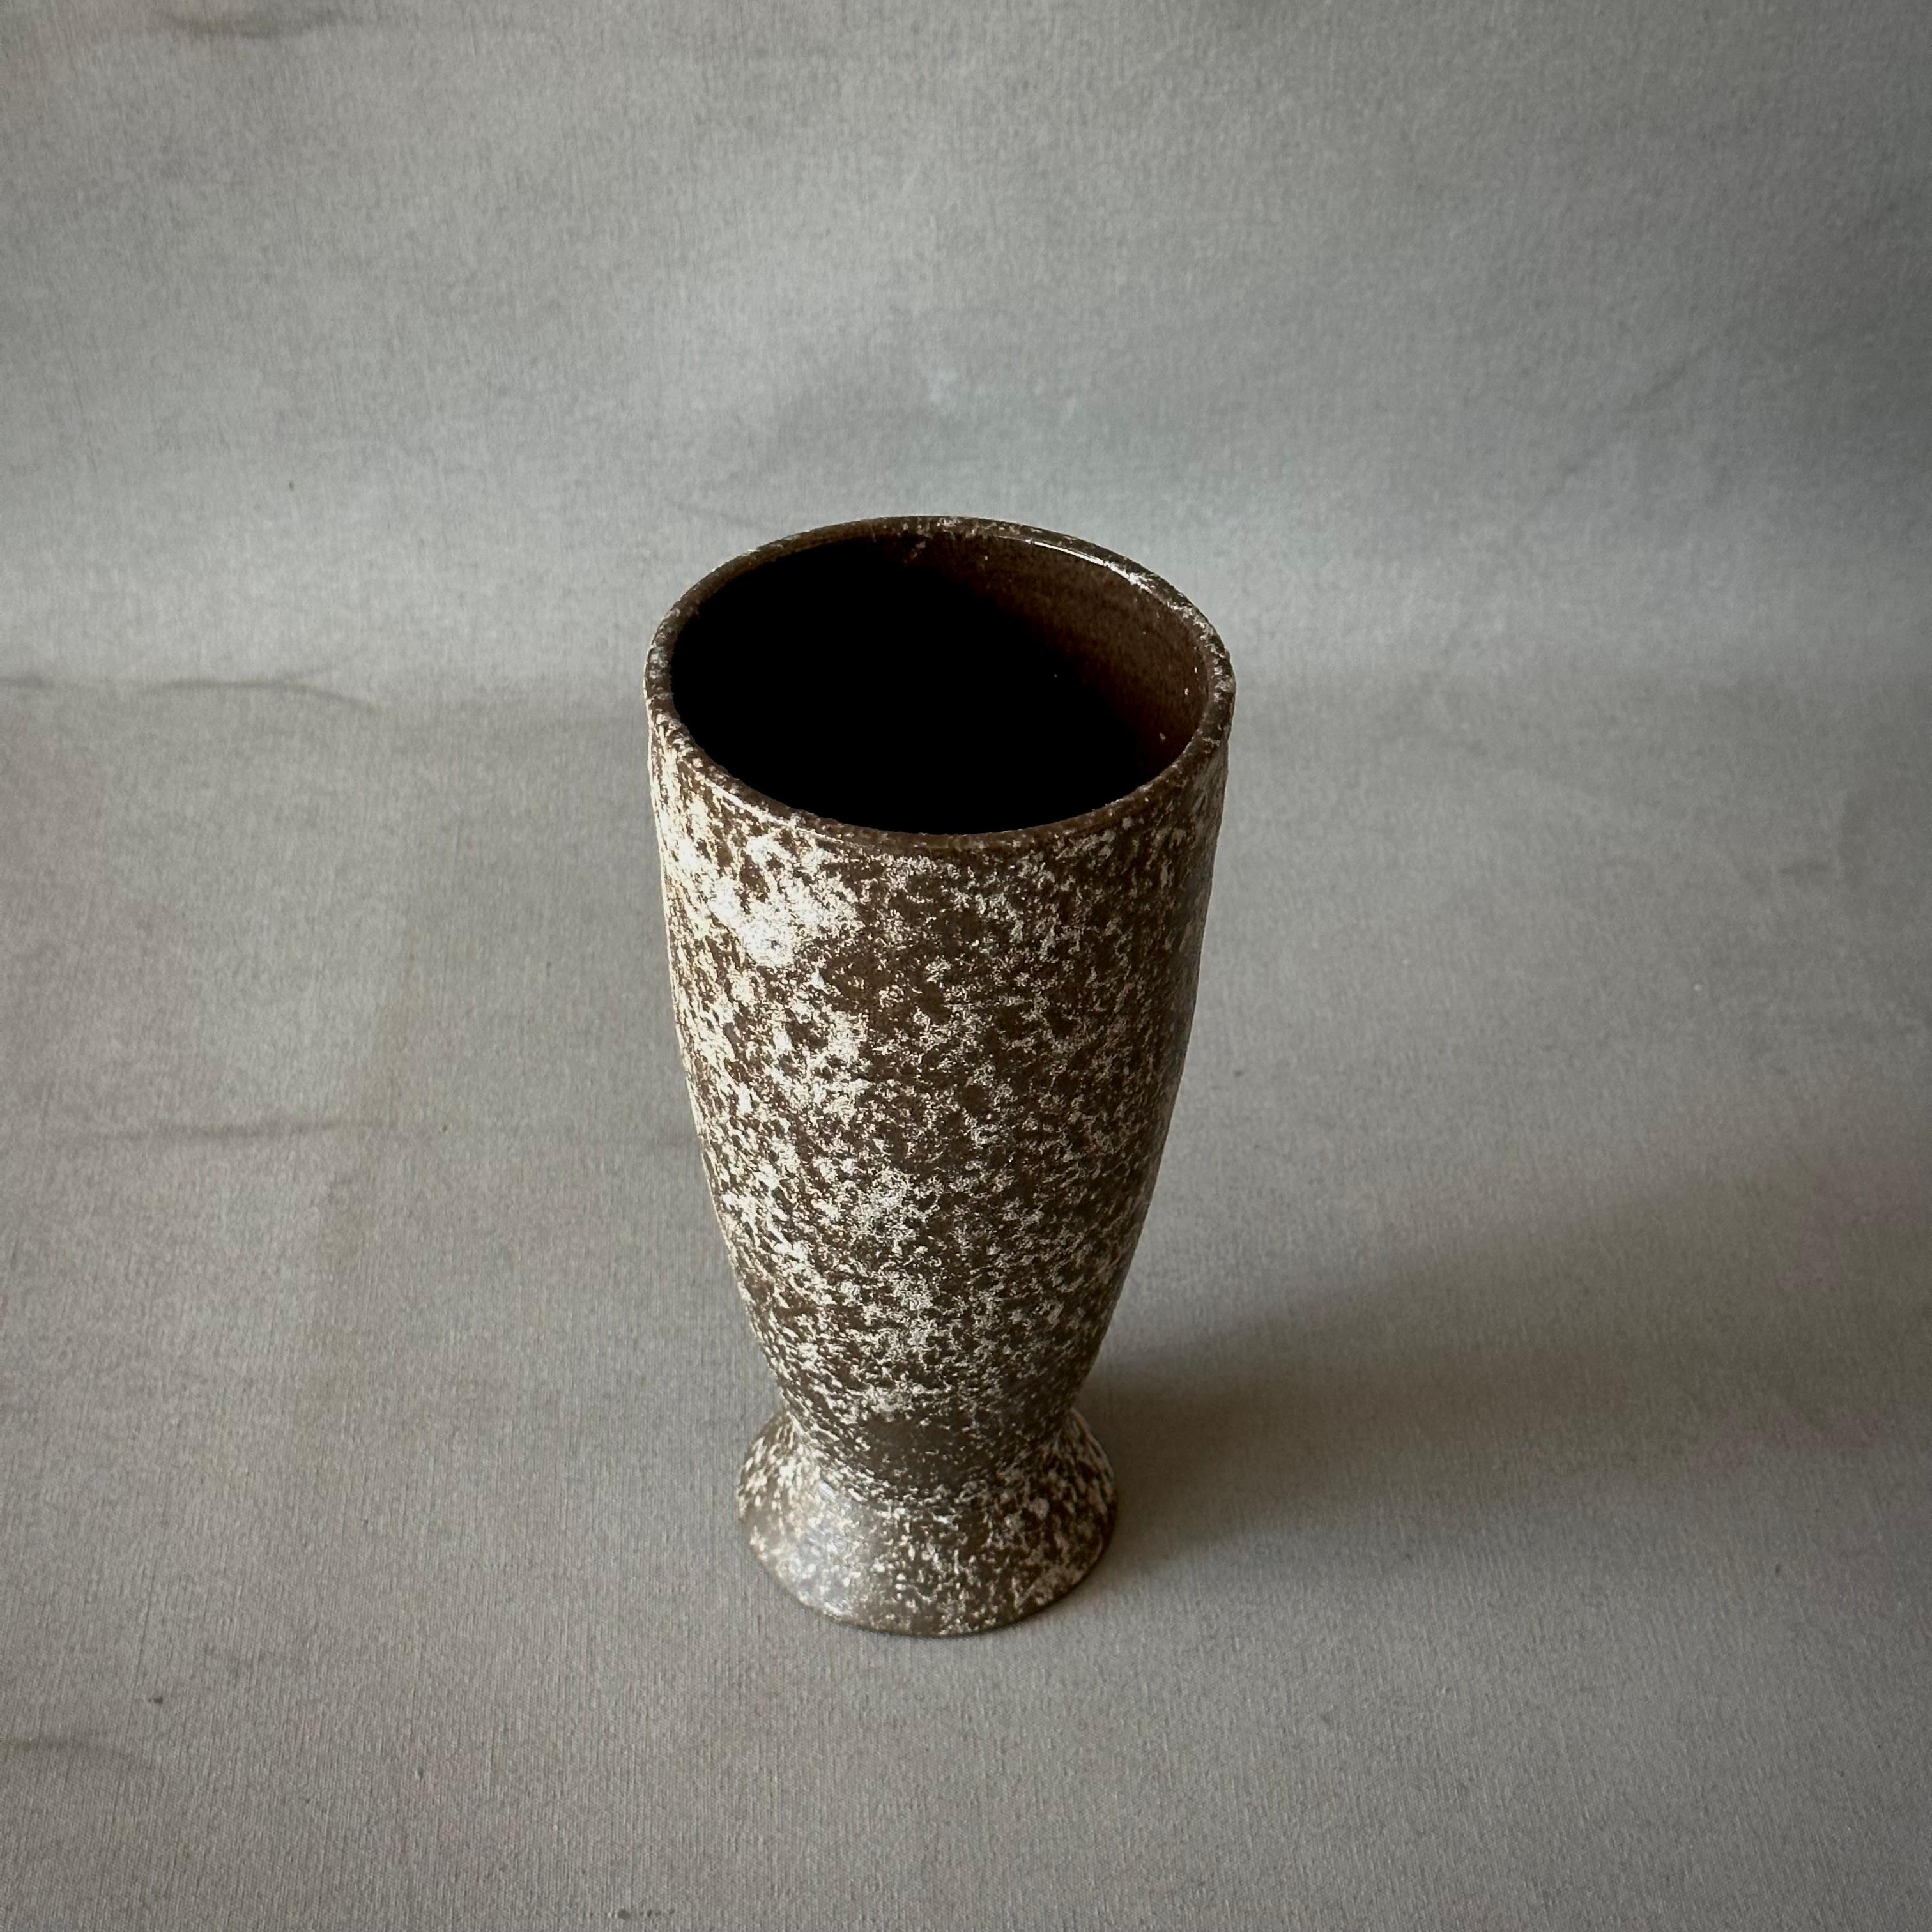 Vase aus brauner Studio-Keramik mit grauen Spritzern.

Schweden, um 1970

Abmessungen: 4B x 4T x 8H